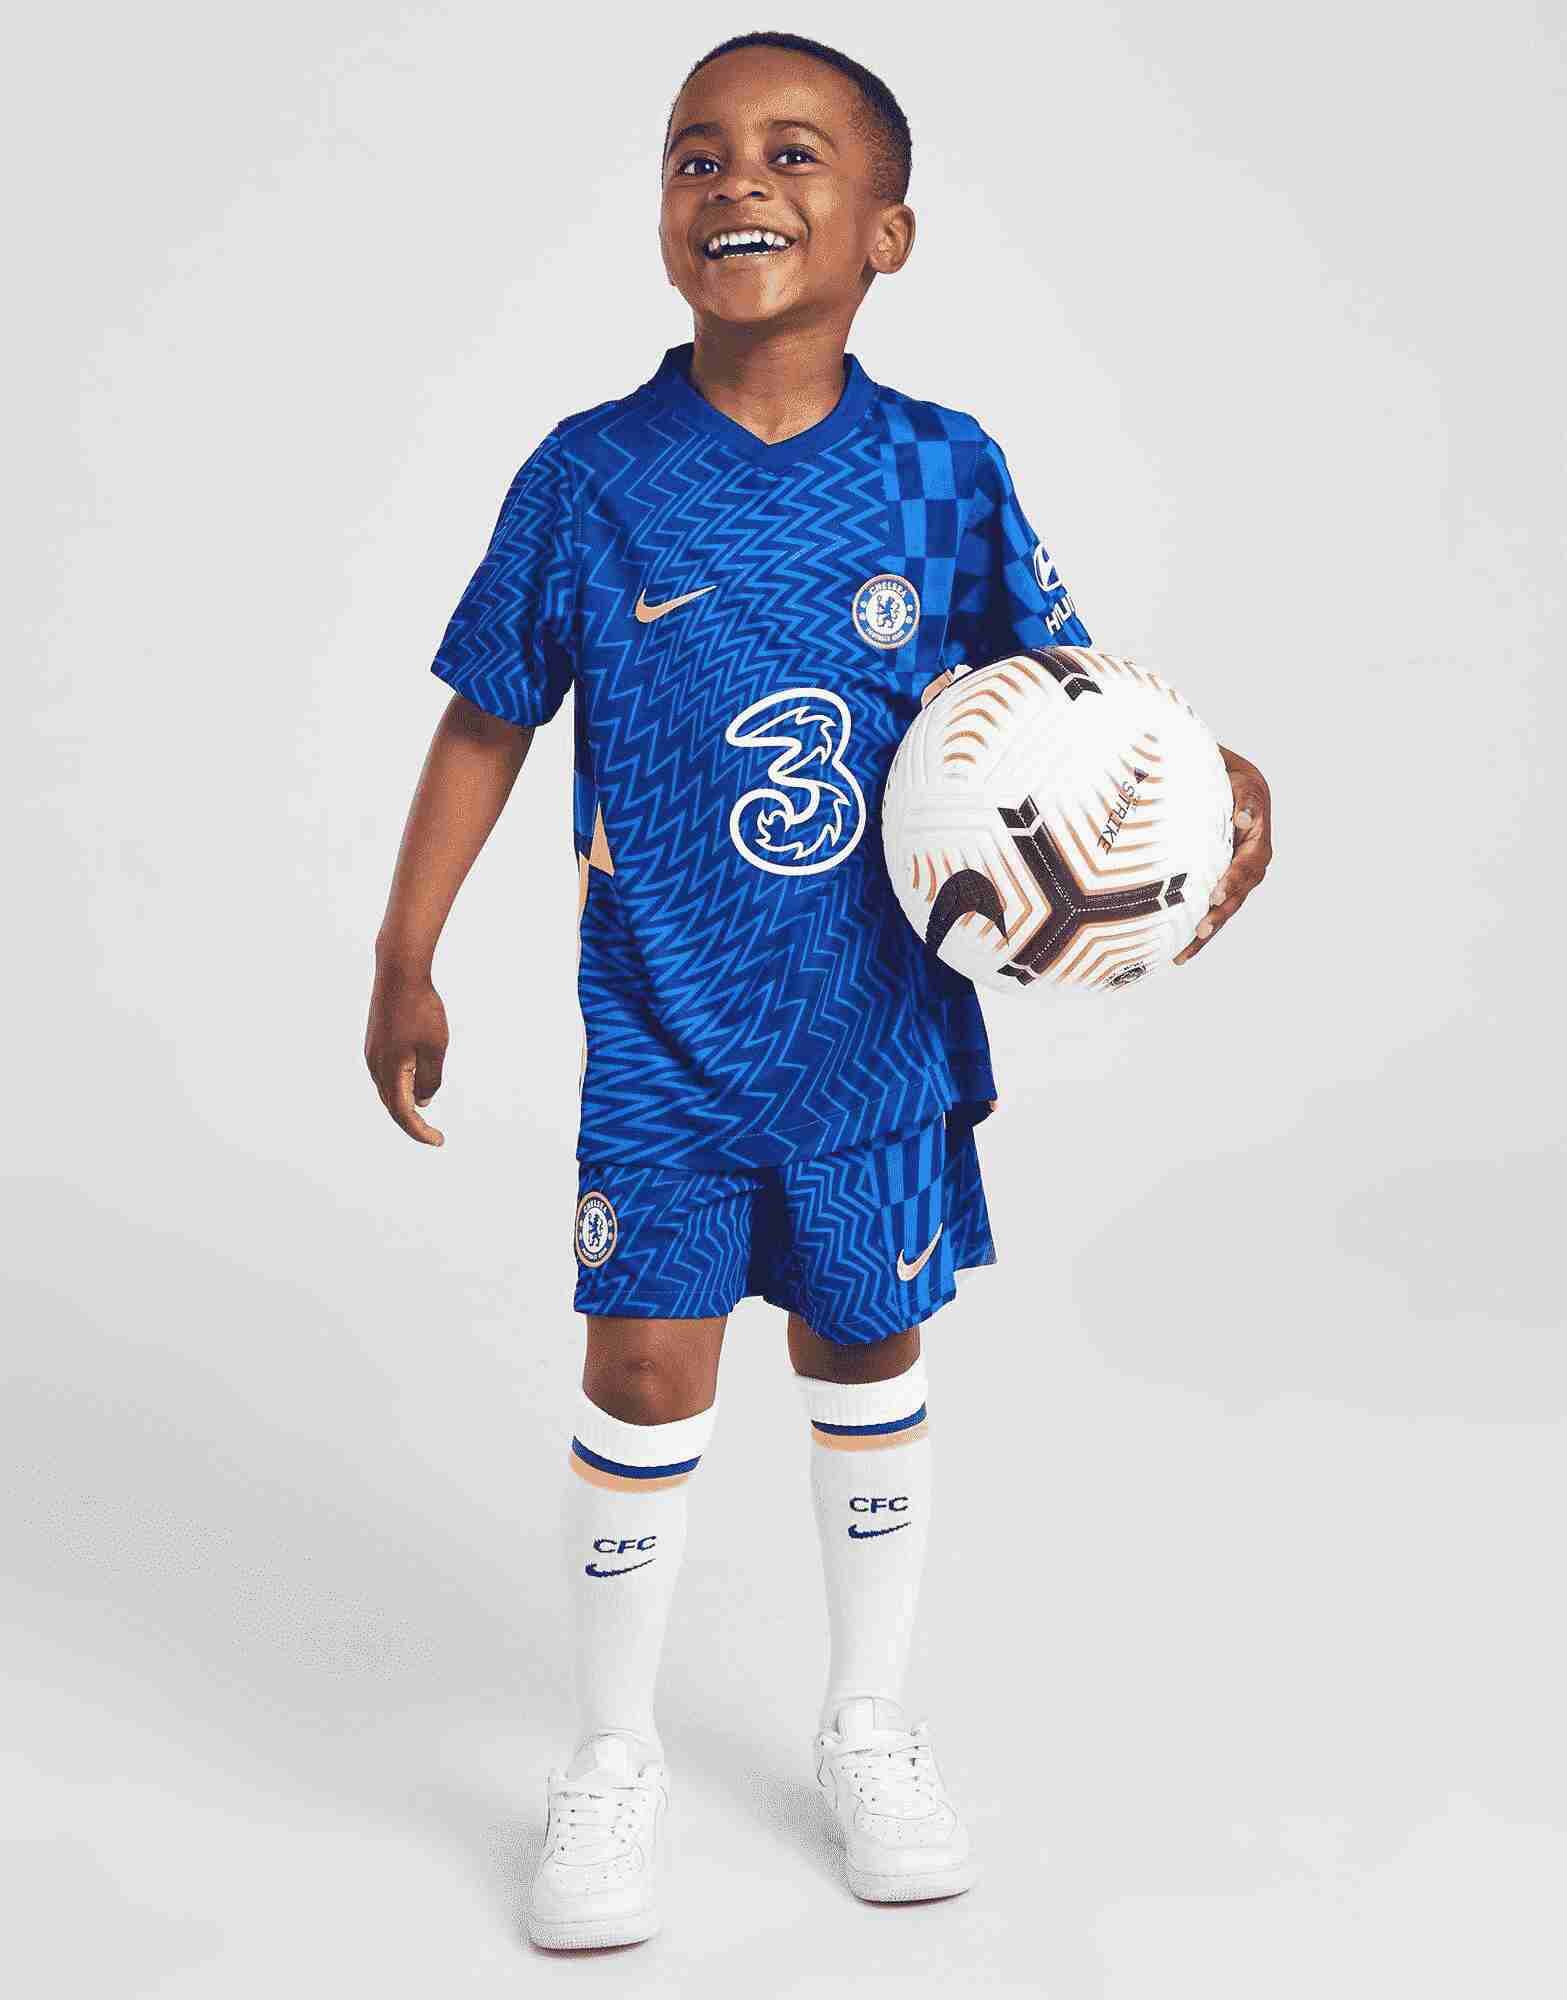 Chelsea dresy pro děti Oděv pro budoucí hvězdy fotbalu